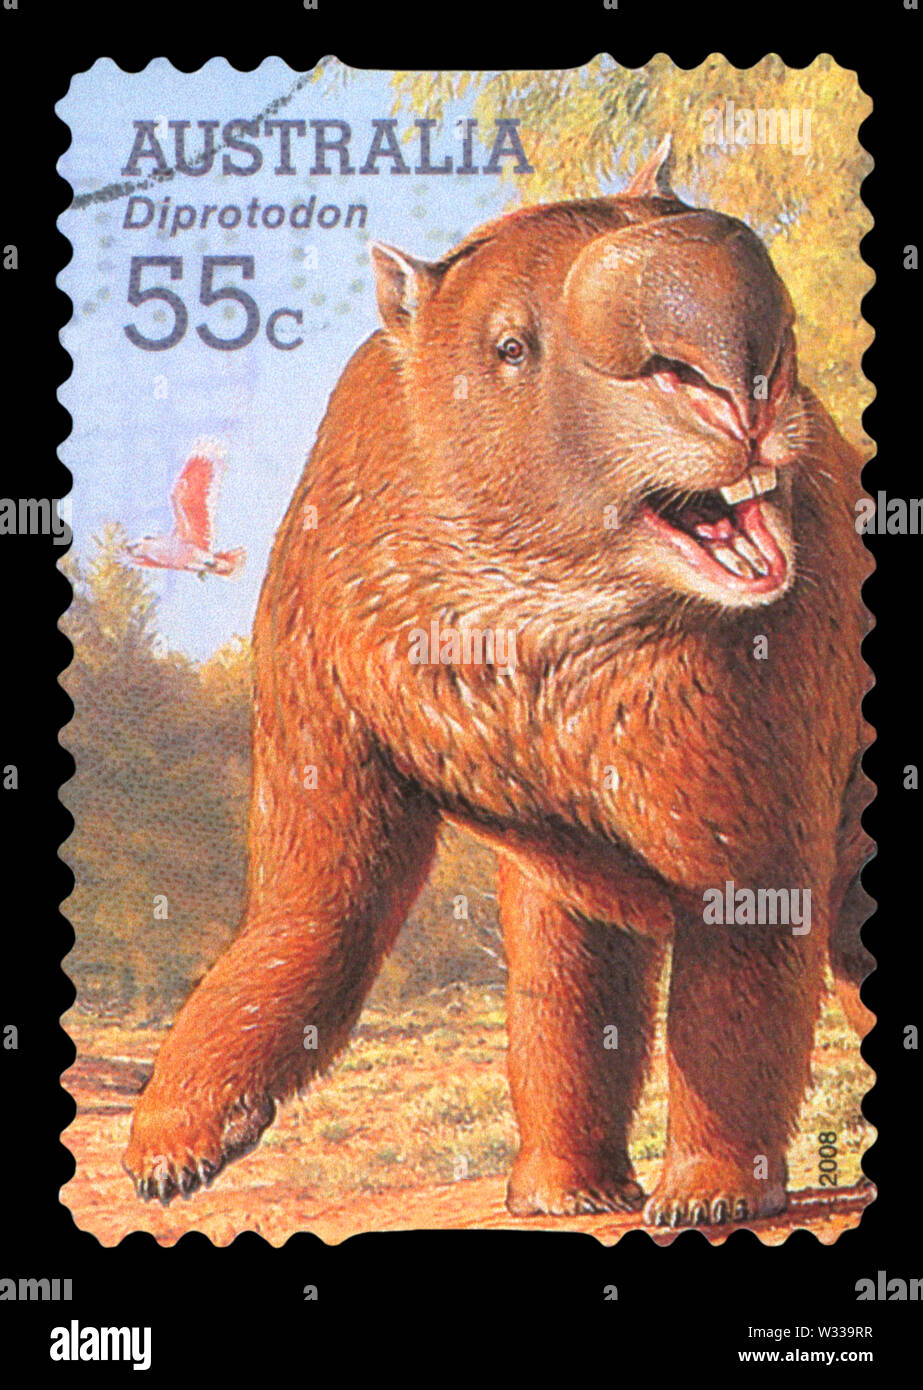 L'AUSTRALIE - circa 2008 : timbre imprimé en Australie montre un animal - l'Australie, vers 2008 Diprotodon. Banque D'Images